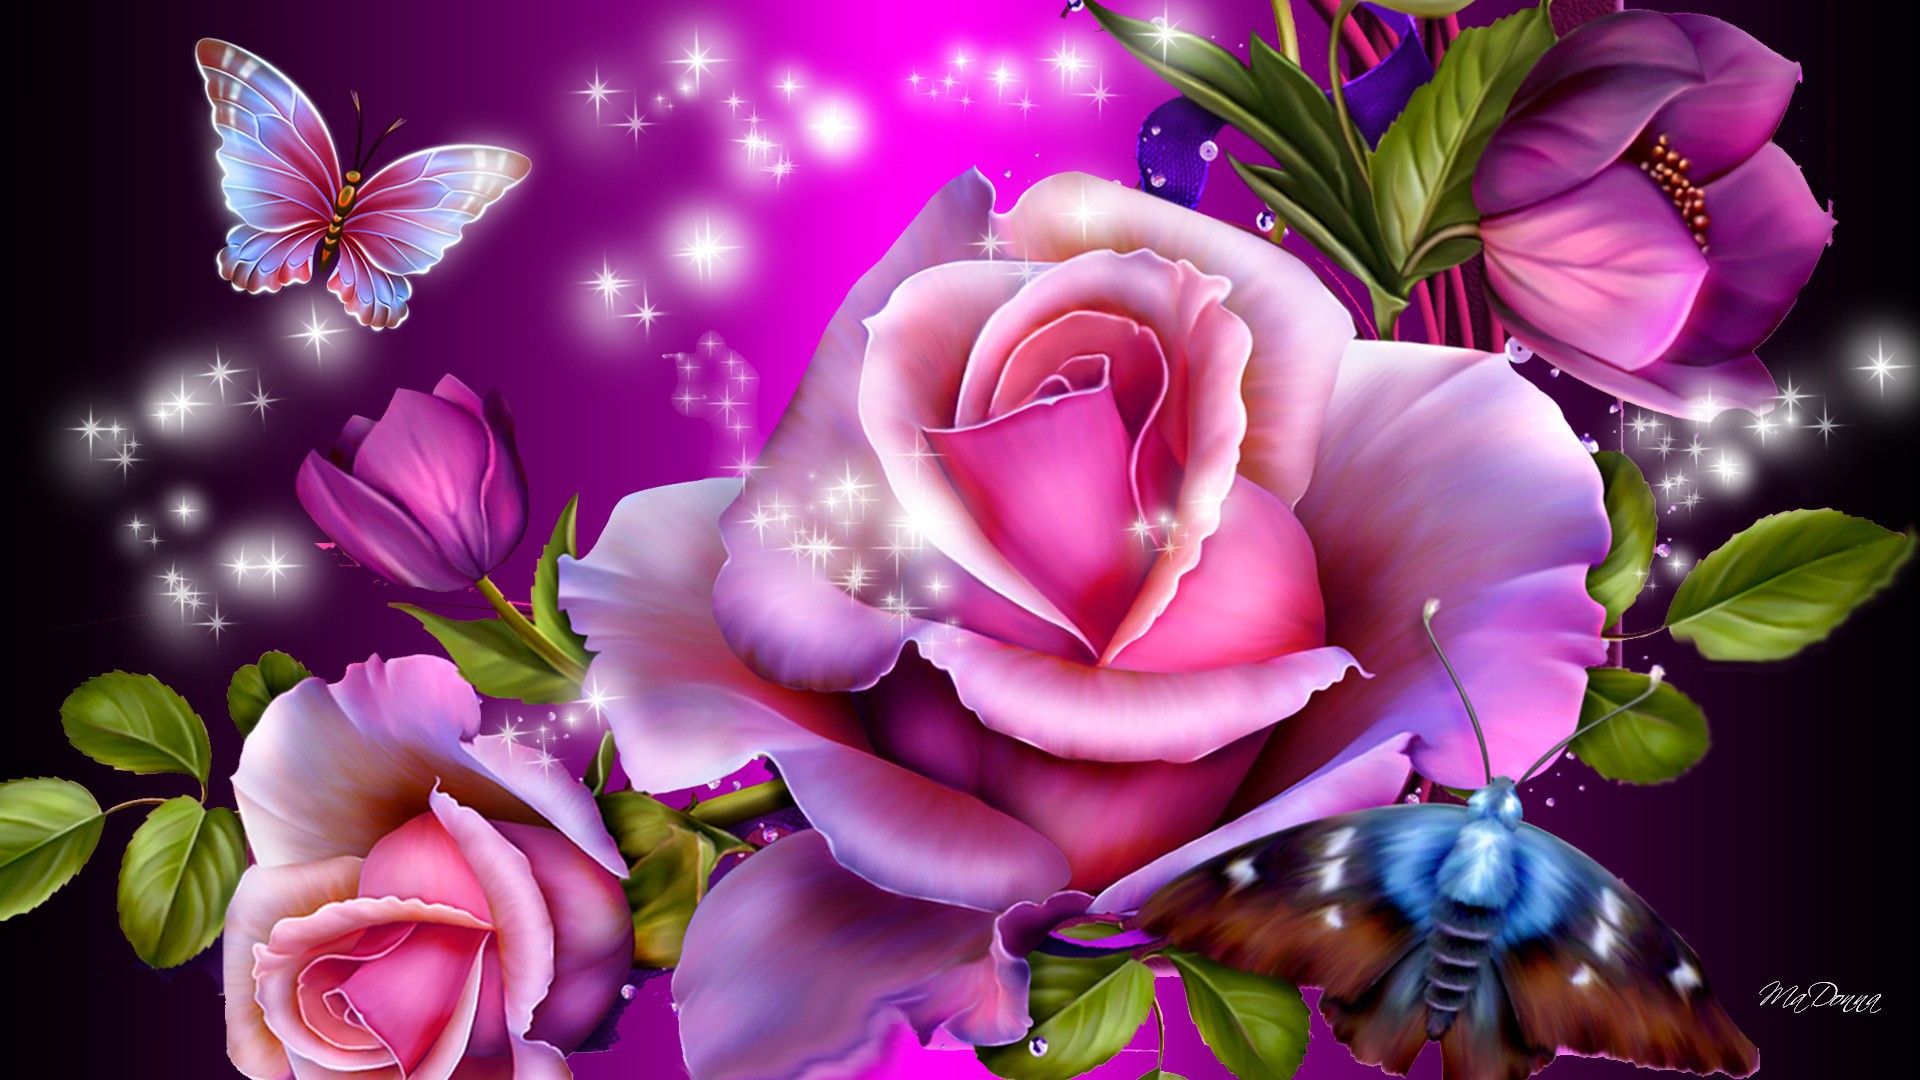 rosentapete,rosa,blume,blütenblatt,violett,lila